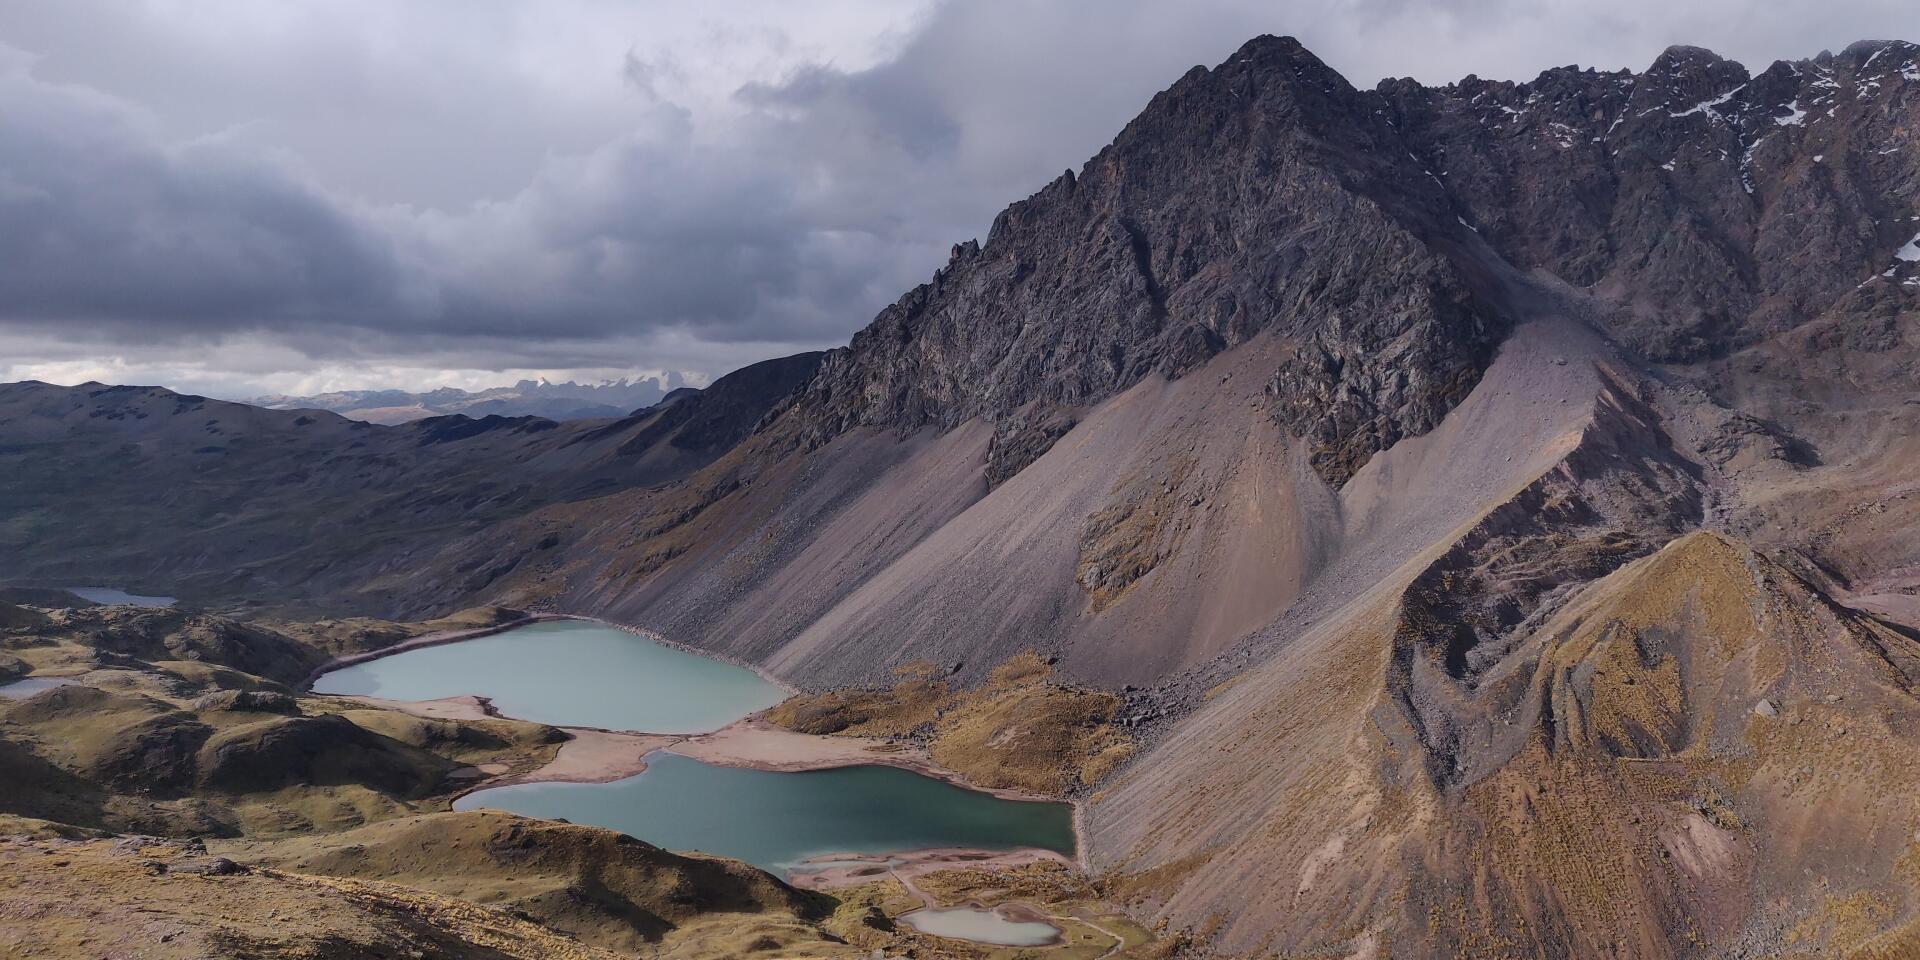 Ausangate trek in Peru, Palomani pass and Col Jampa pass